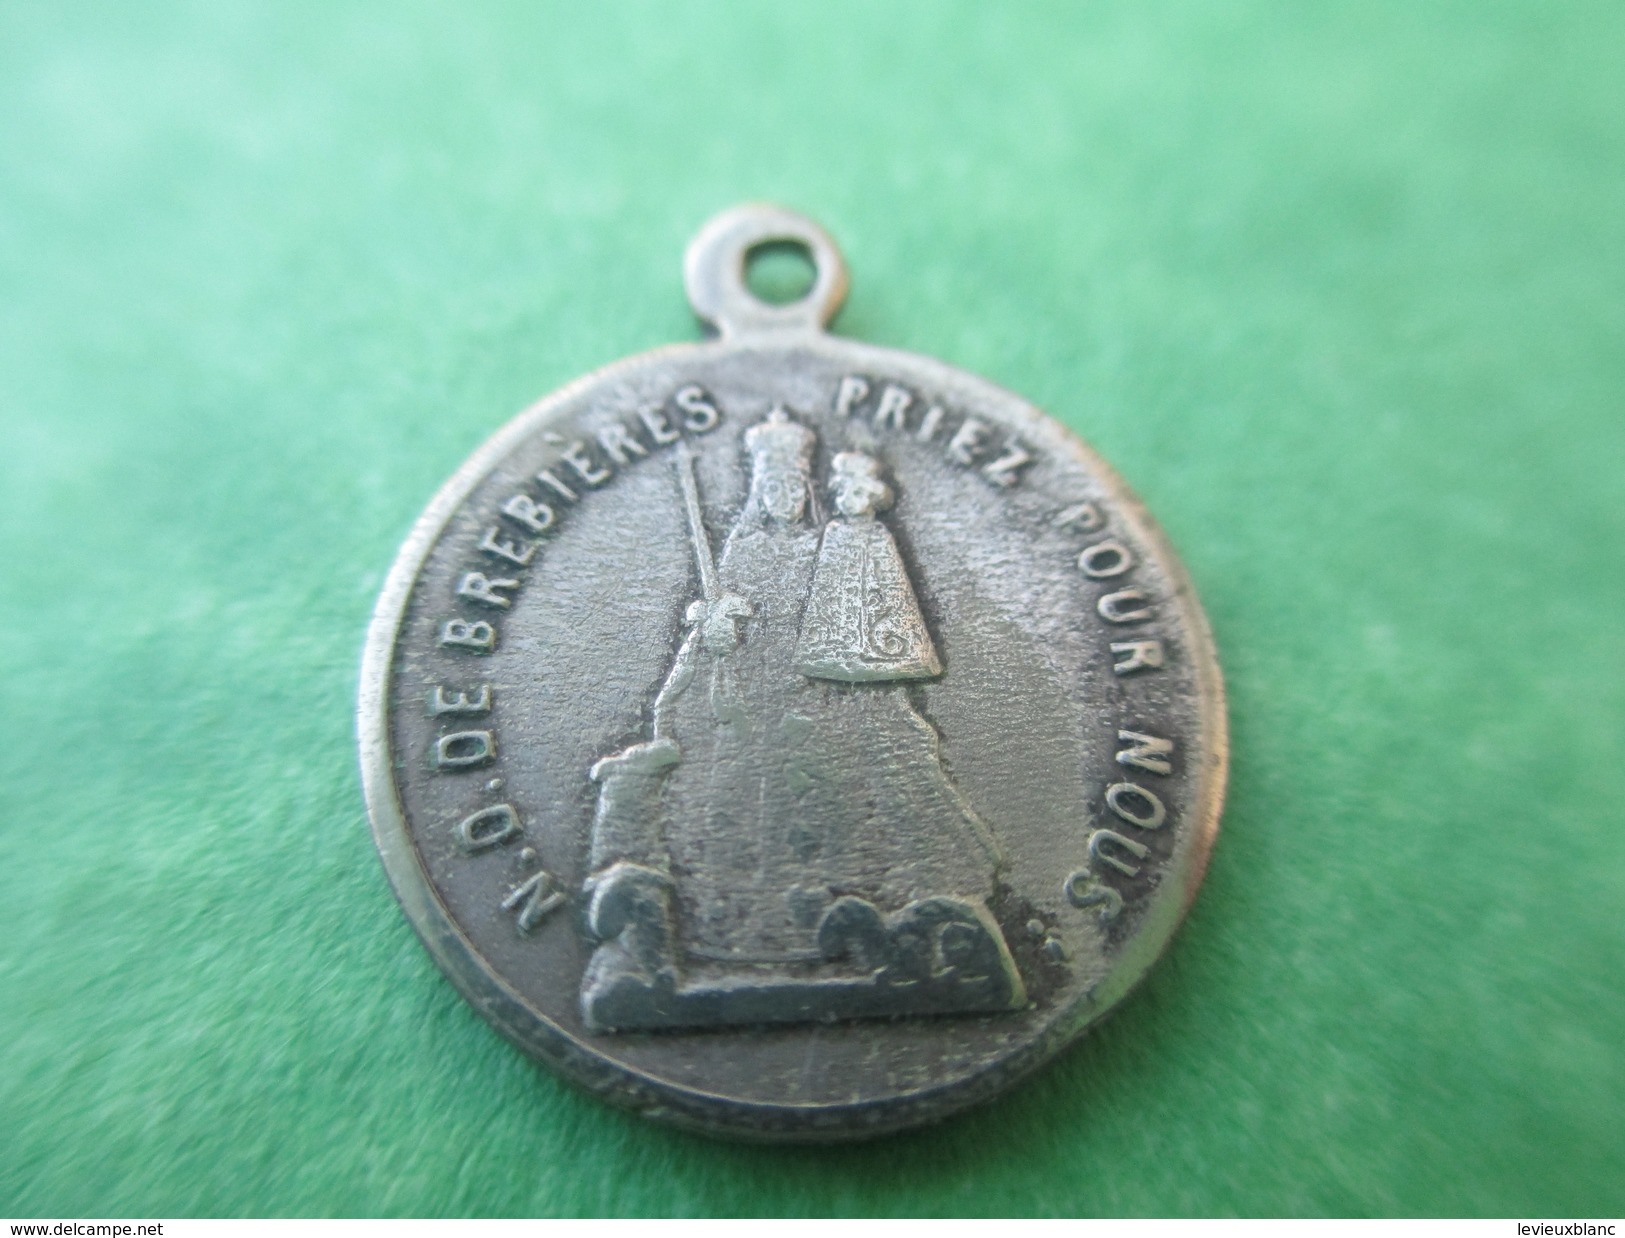 Médaille Ancienne Religieuse/ND De Brebiéres Priez Pour Nous/Souvenir De Pèlerinage/ Albert Somme/19éme Siécle    CAN271 - Religion & Esotérisme